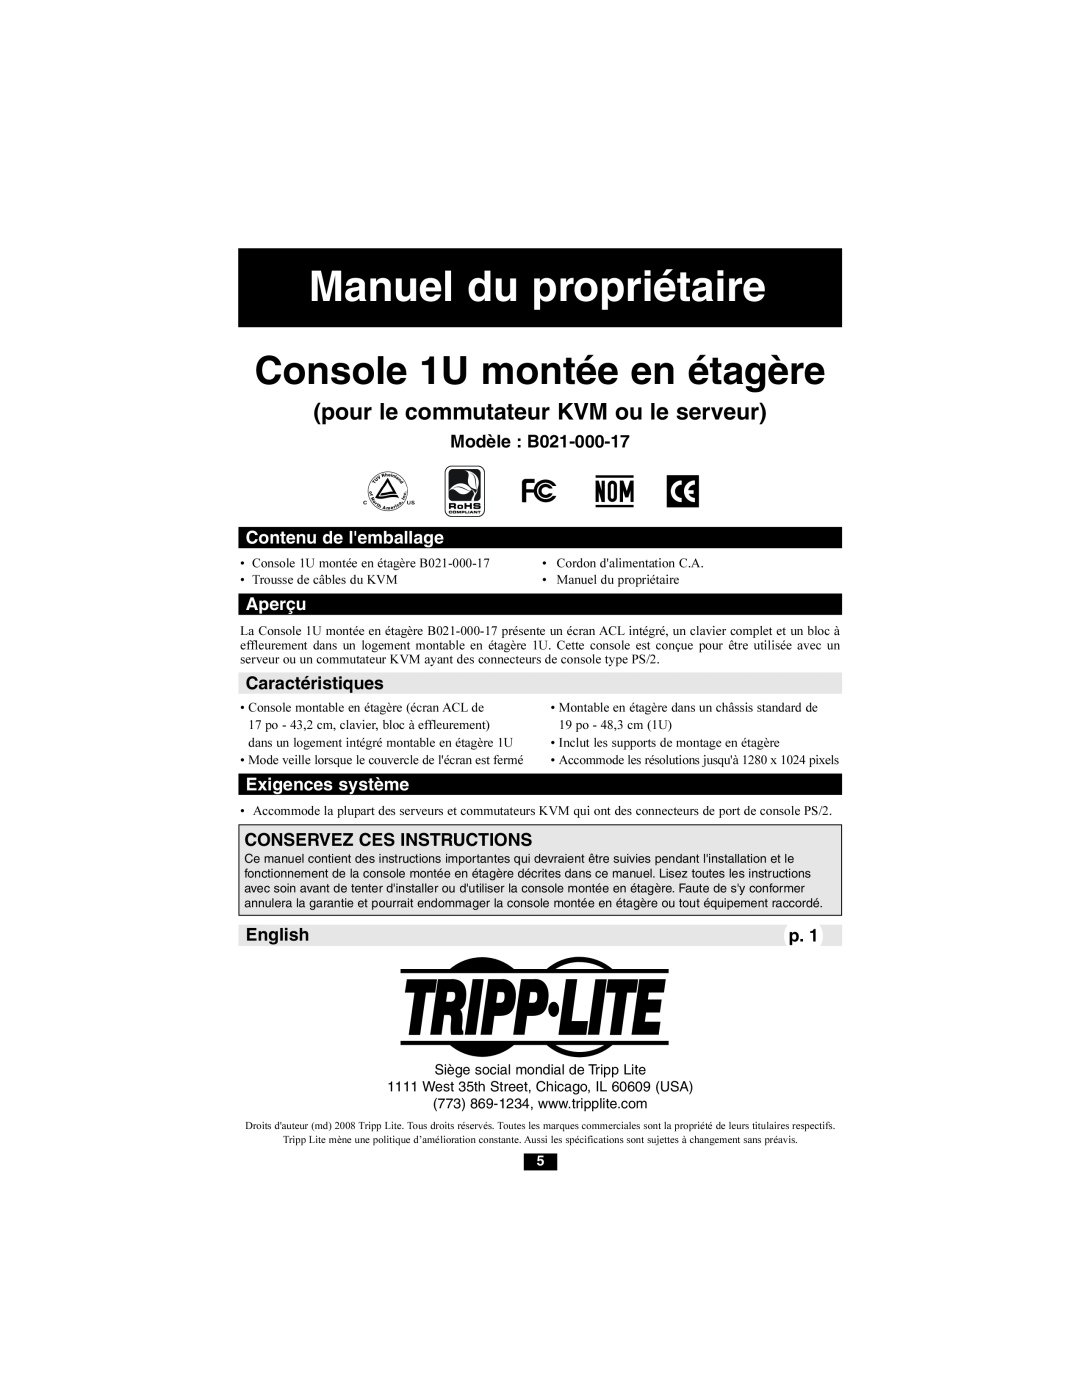 Tripp Lite Console 1U montée en étagère, Modèle B021-000-17, Contenu de lemballage, Aperçu, Caractéristiques, English 